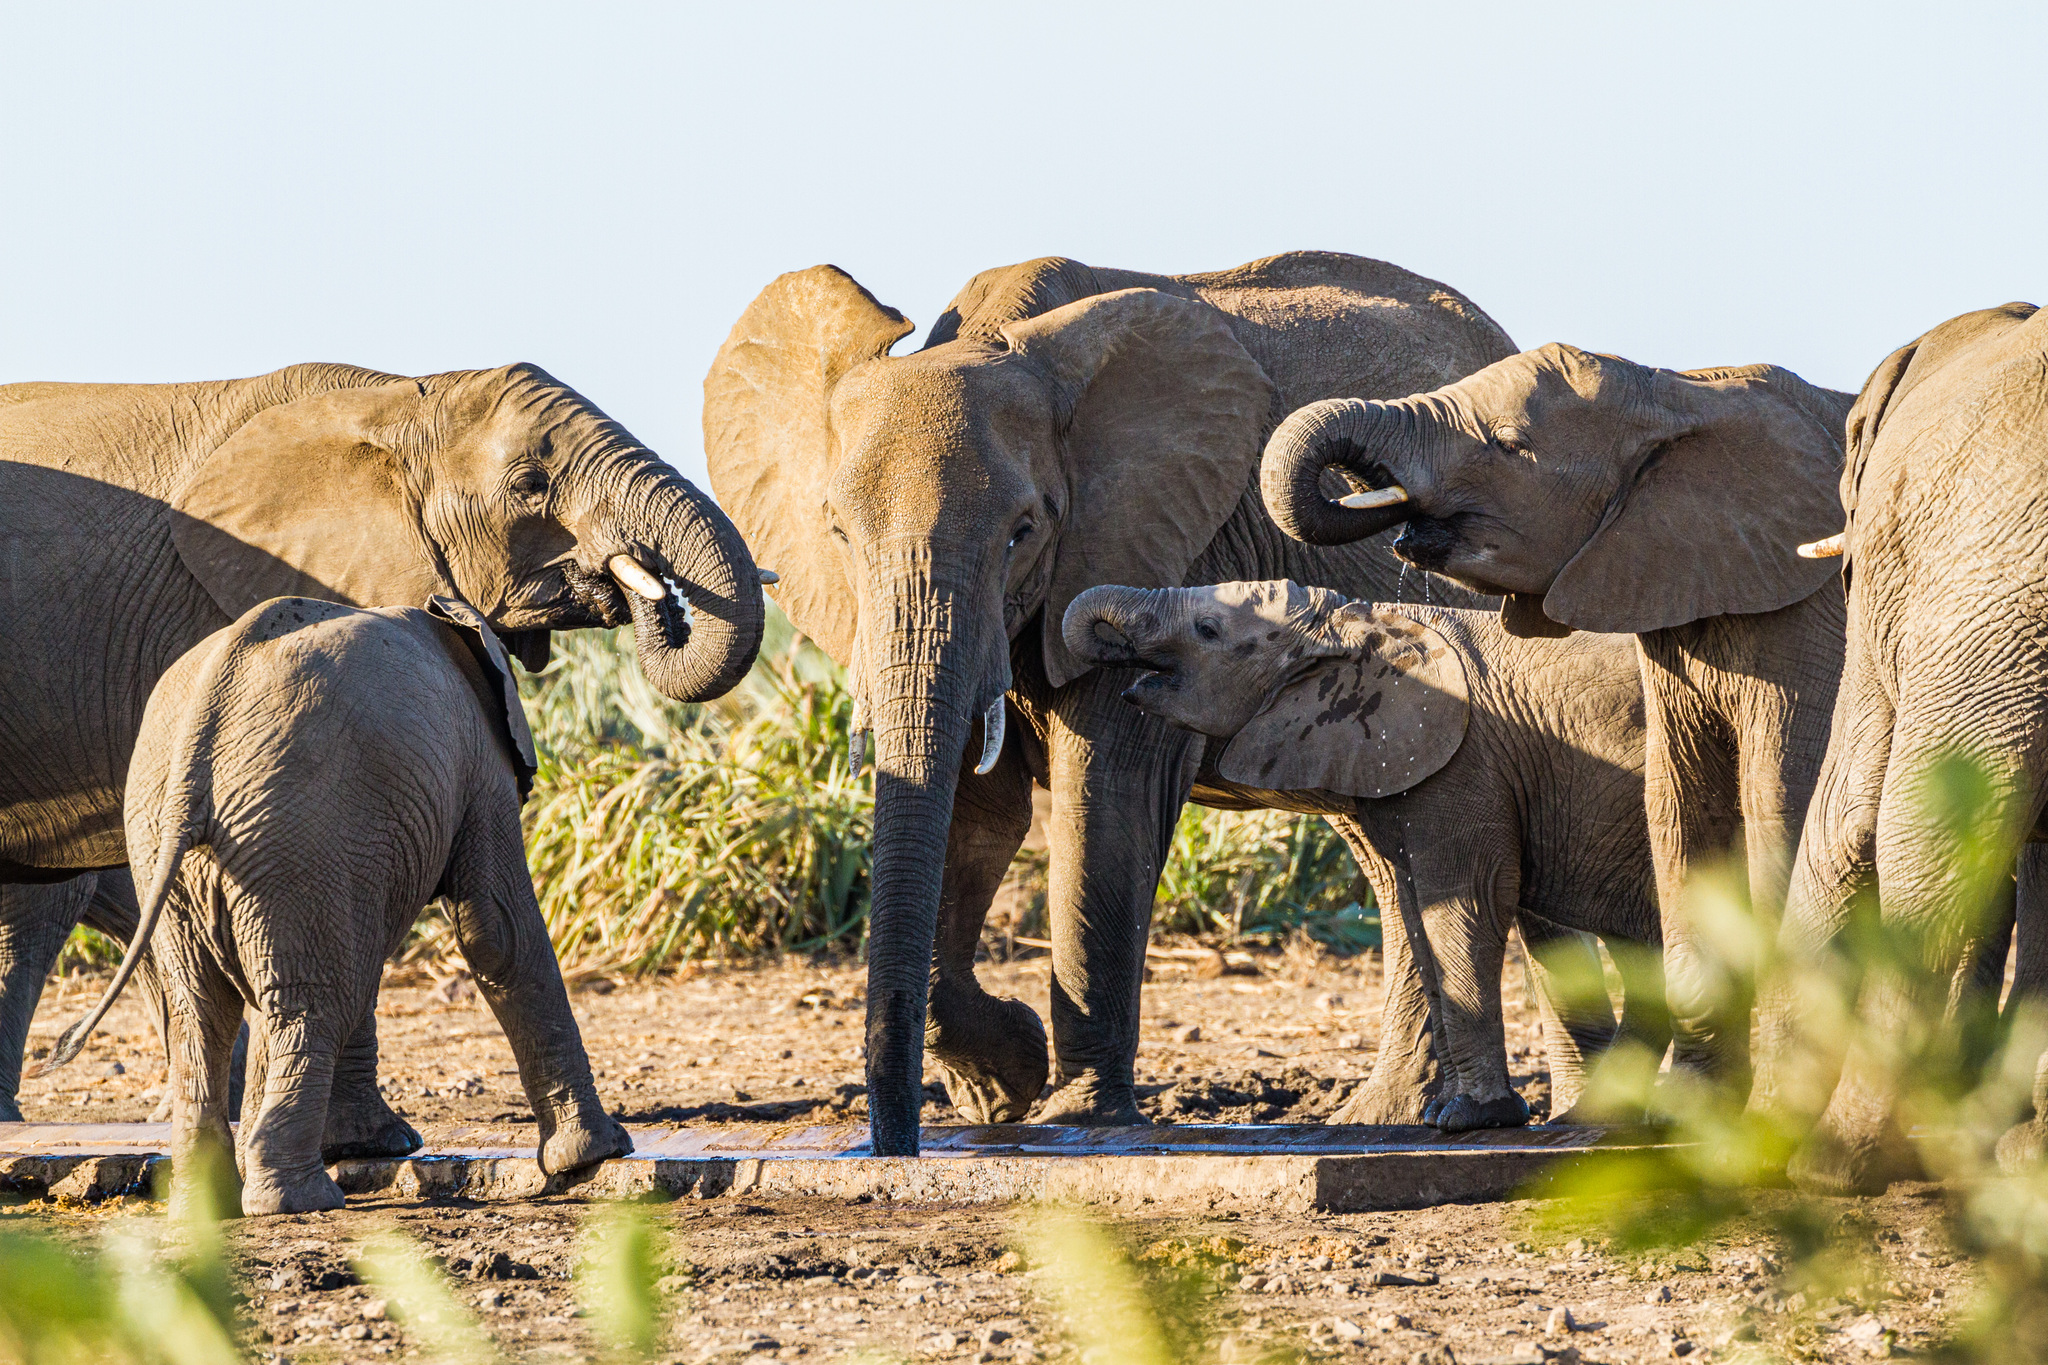 Investigación en Kenia revela que elefantes se llaman con nombres propios entre ellos